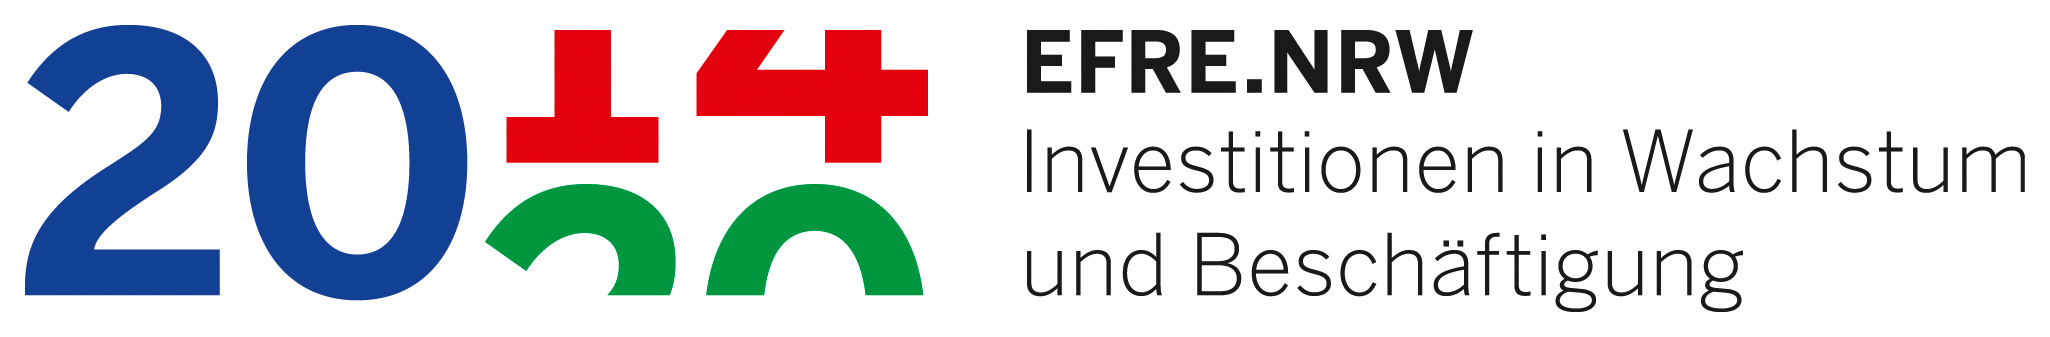 Logo von EFRE.NRW - Investitionen in Wachstum und Beschäftigung.